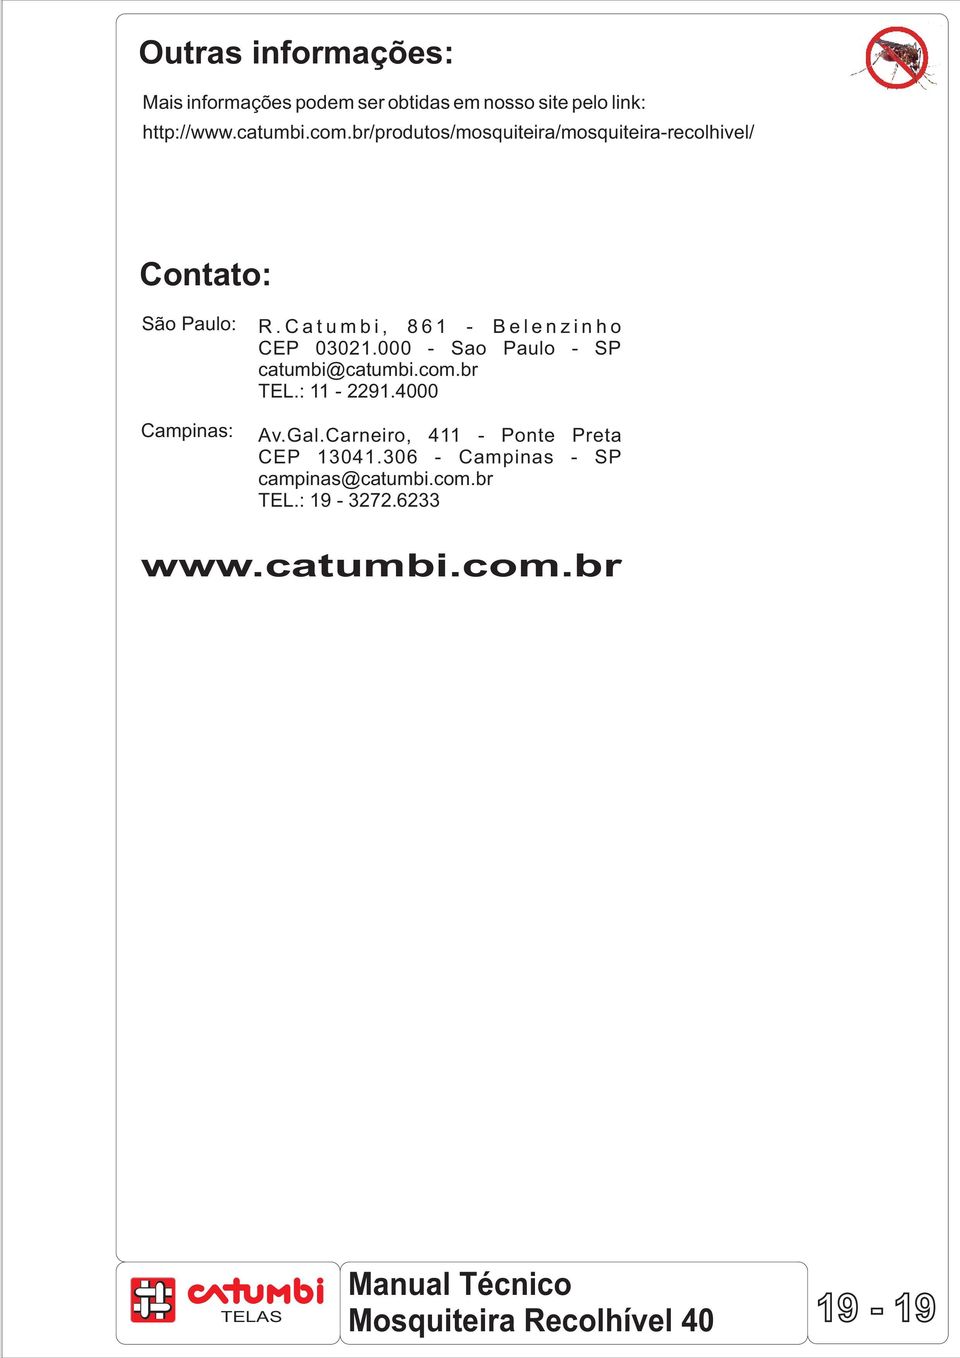 C a t u m b i, 8 6 1 - B e l e n z i n h o CEP 03021.000 - Sao Paulo - SP catumbi@catumbi.com.br TEL.